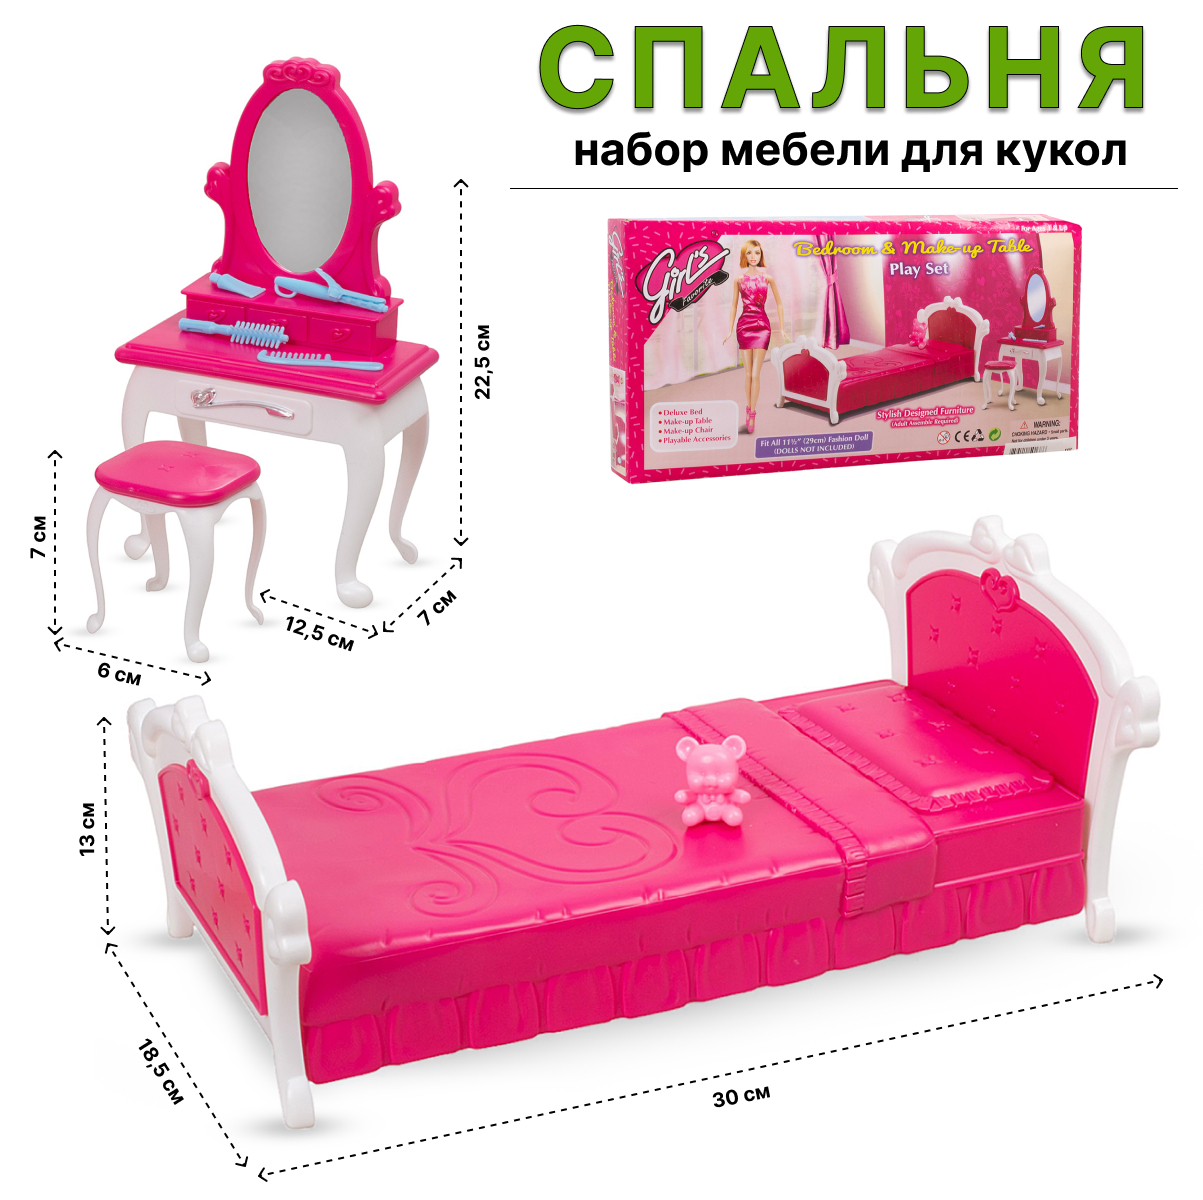 Игровой набор Tongde мебели для кукол 3014 Спальня набор детской мебели sitstep туалетный столик и стул малиновый